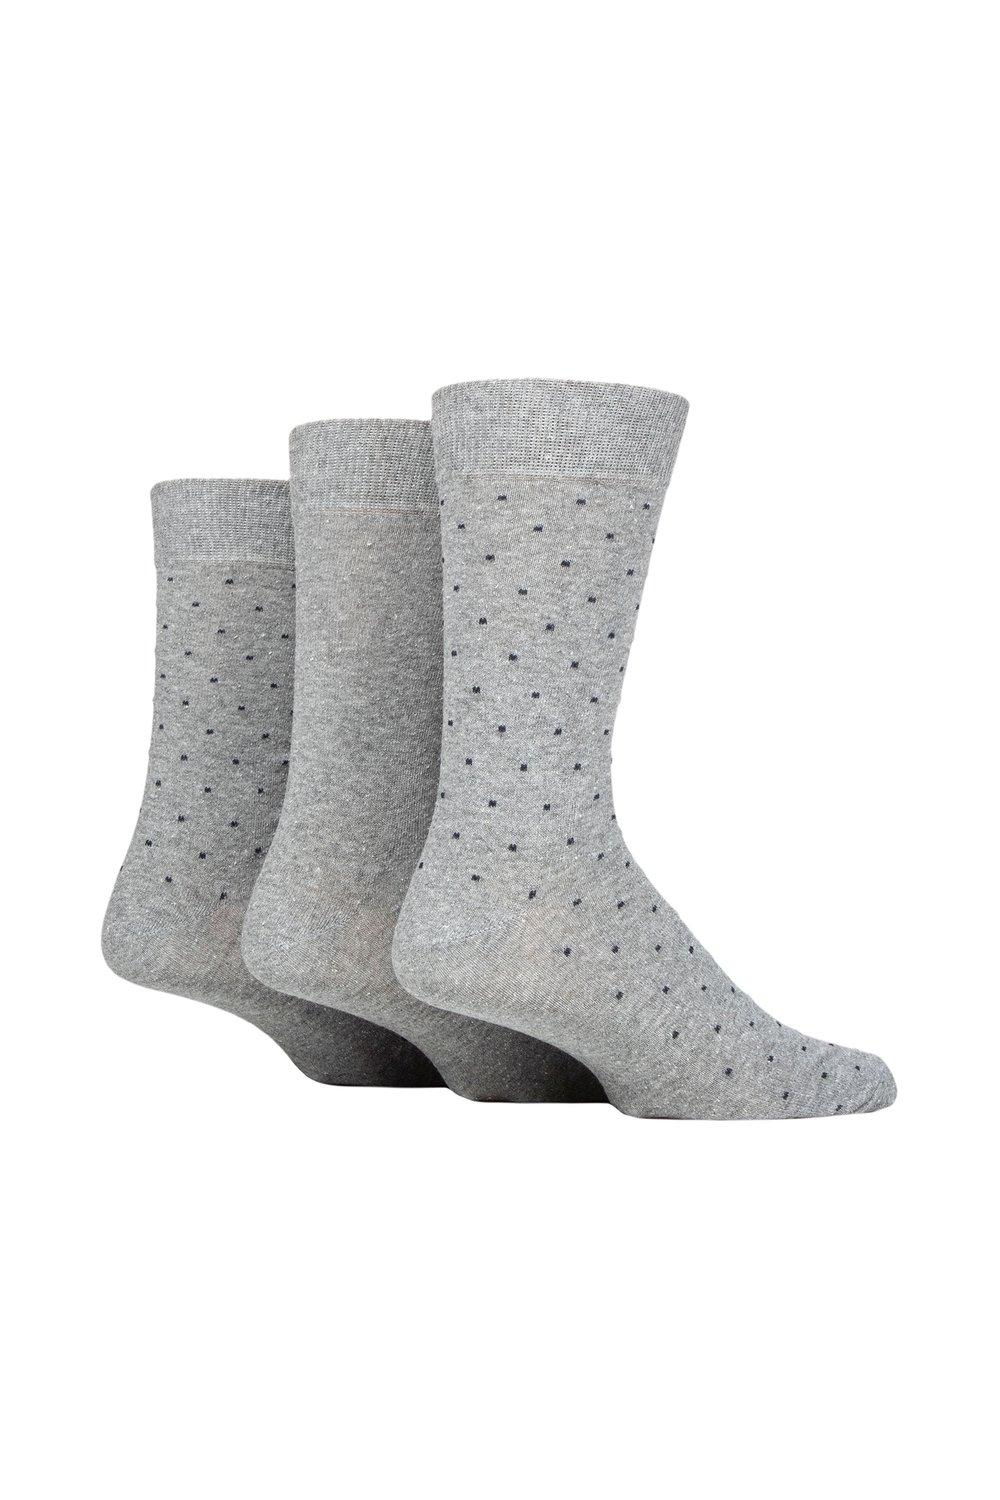 3 пары хлопковых носков в горошек из 100% переработанных материалов SOCKSHOP TORE, серый